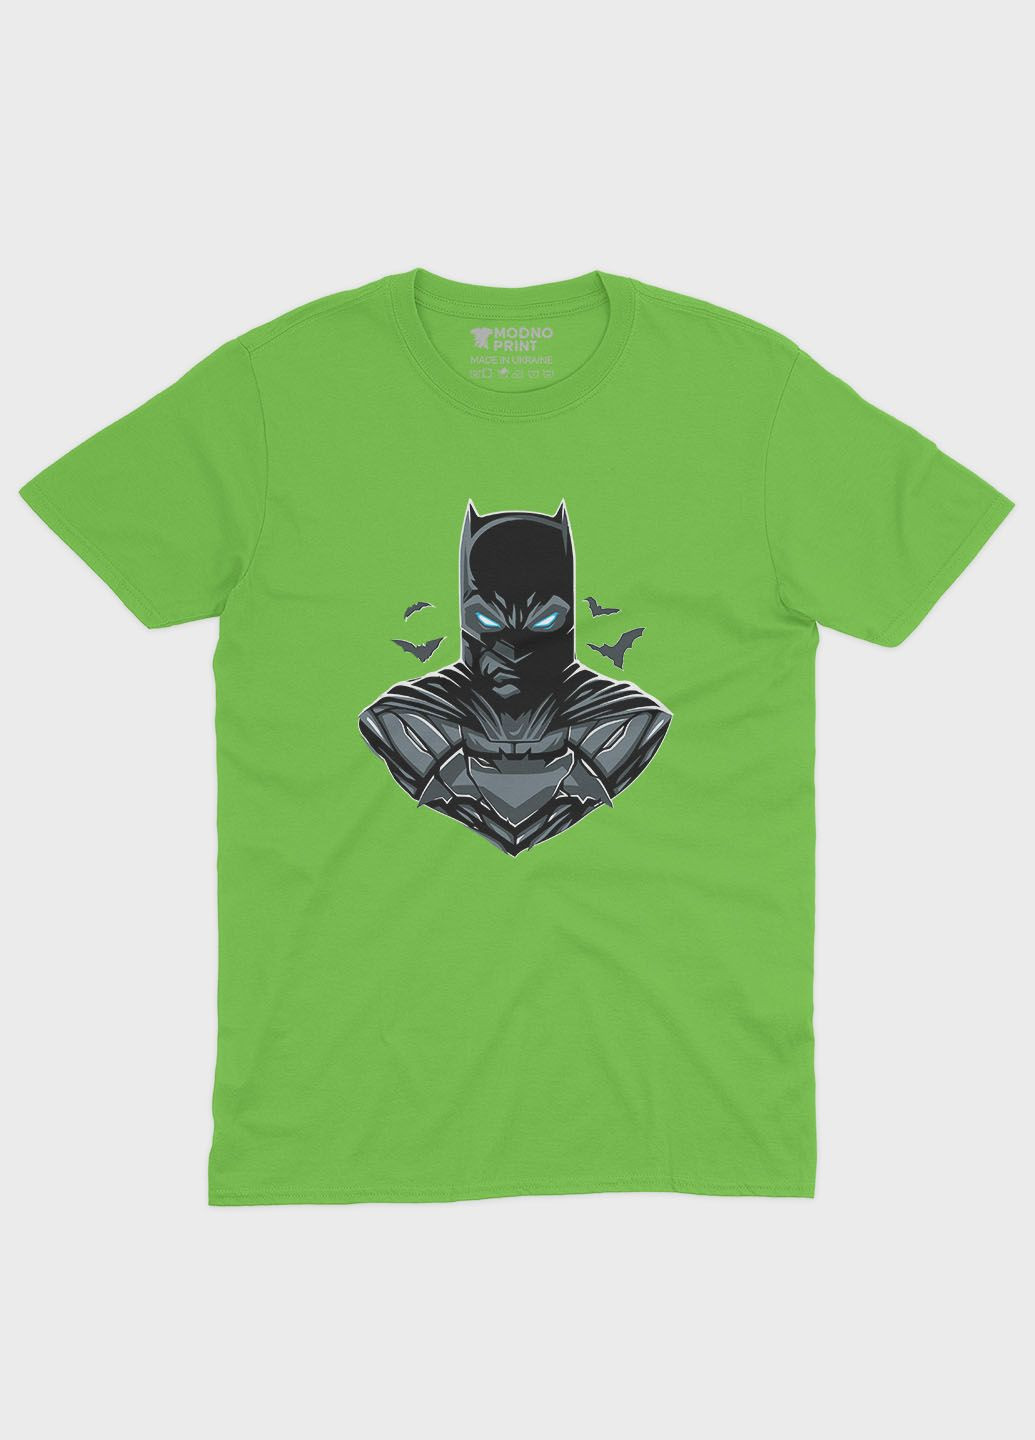 Салатова демісезонна футболка для дівчинки з принтом супергероя - бетмен (ts001-1-kiw-006-003-045-g) Modno